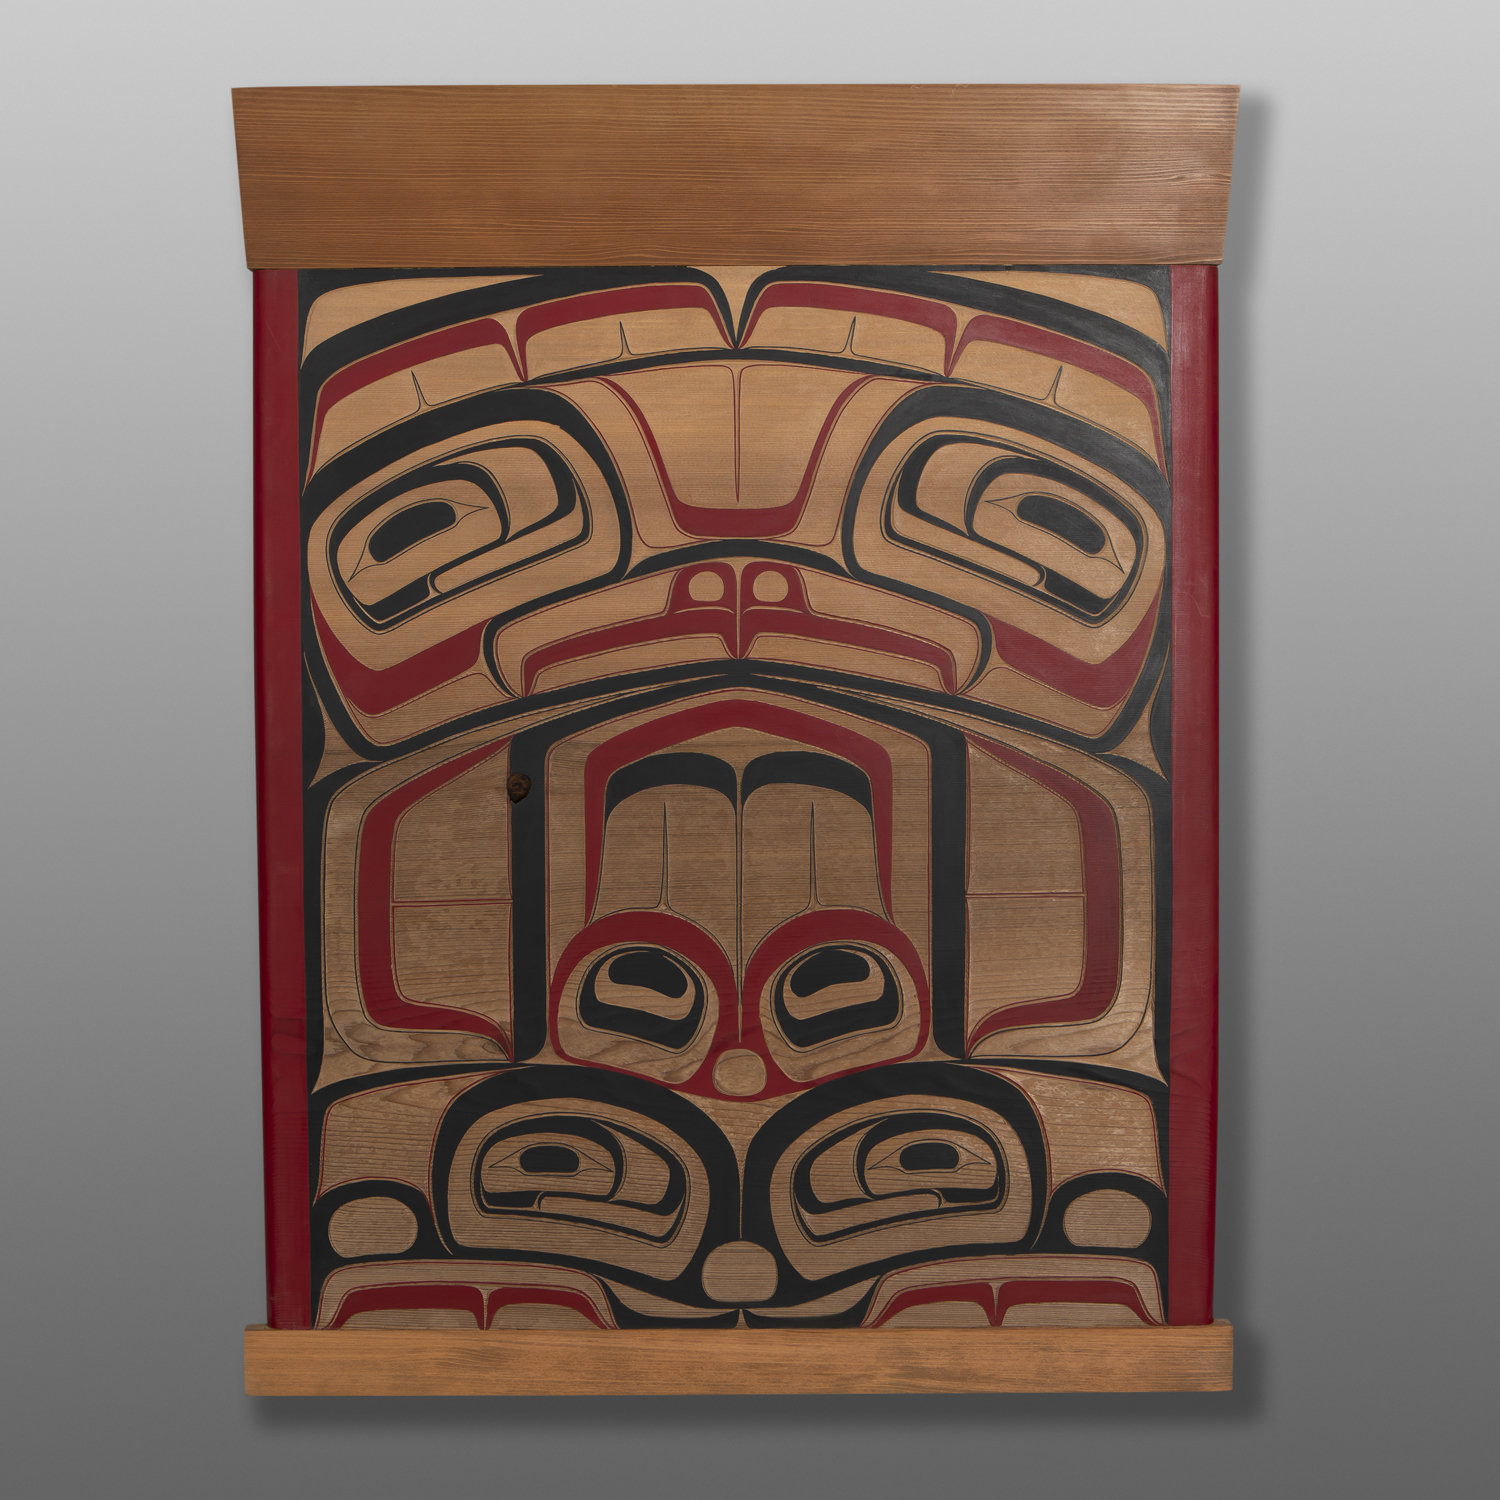 Eagle Box Facade
Shawn Aster
Ts'msyen
Red cedar, paint
36" x 26½” x 1"
$5200